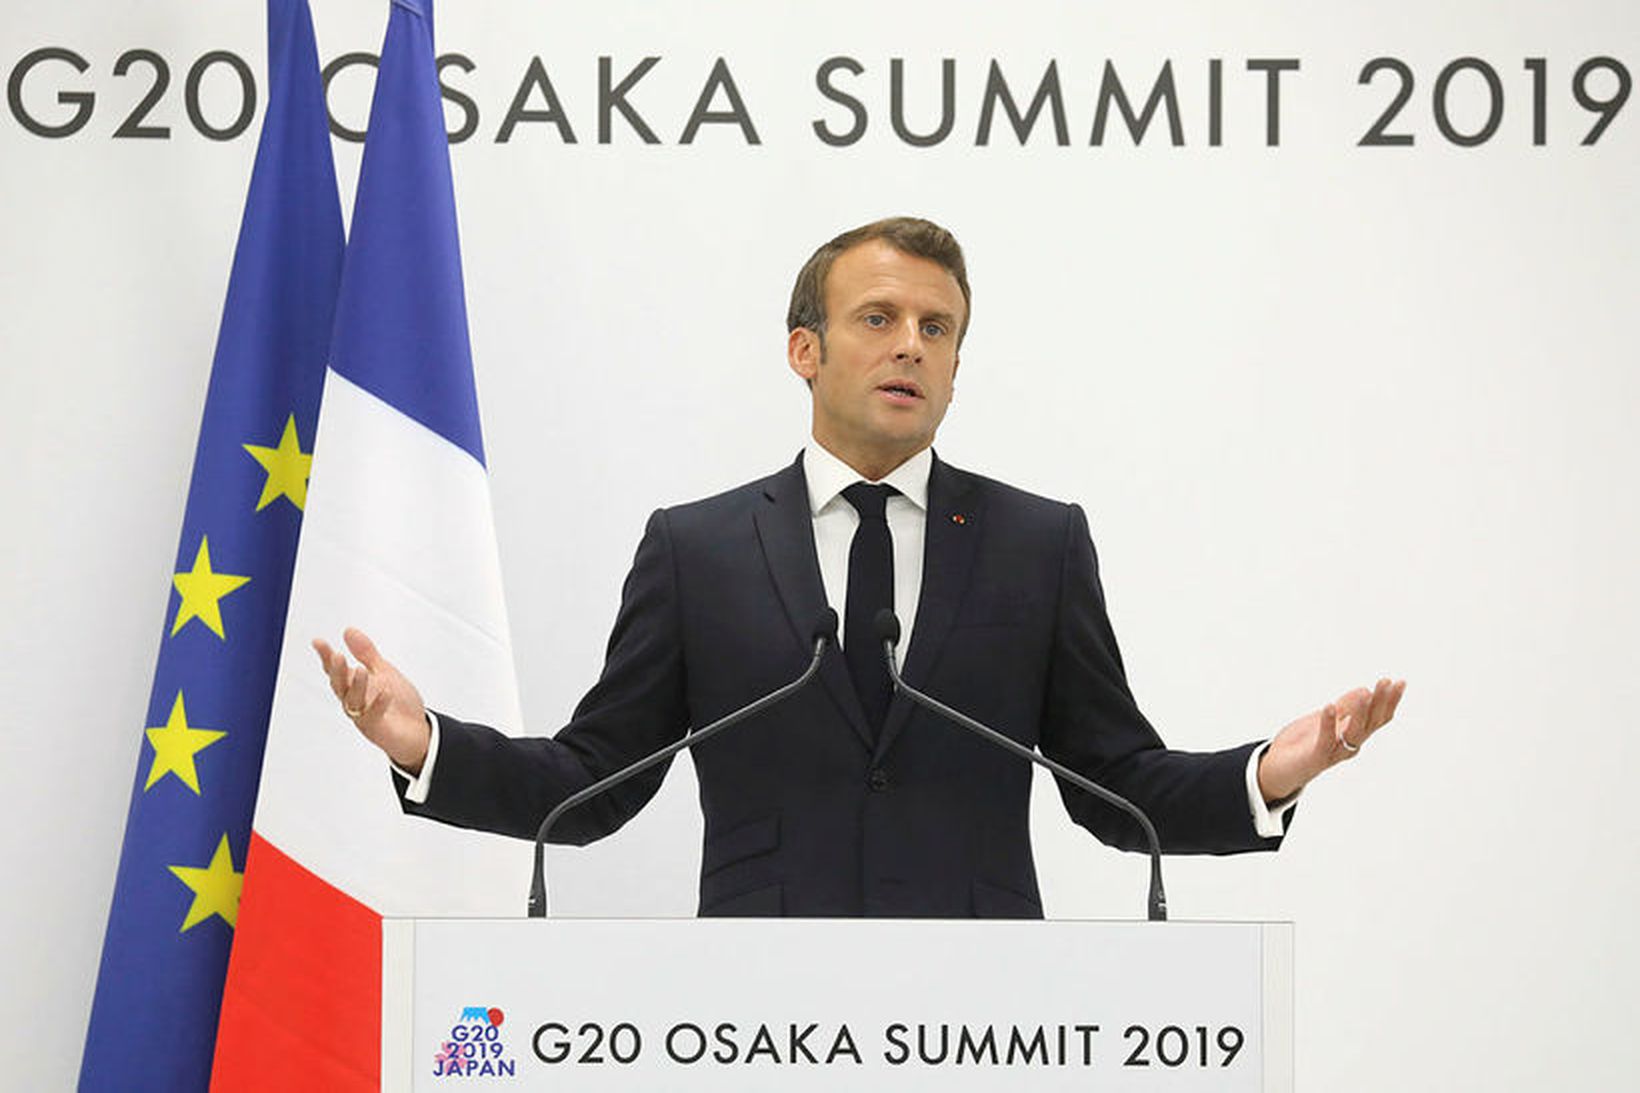 Emmanuel Macron, forseti Frakklands, ræddi um Parísarsamkomulagið.